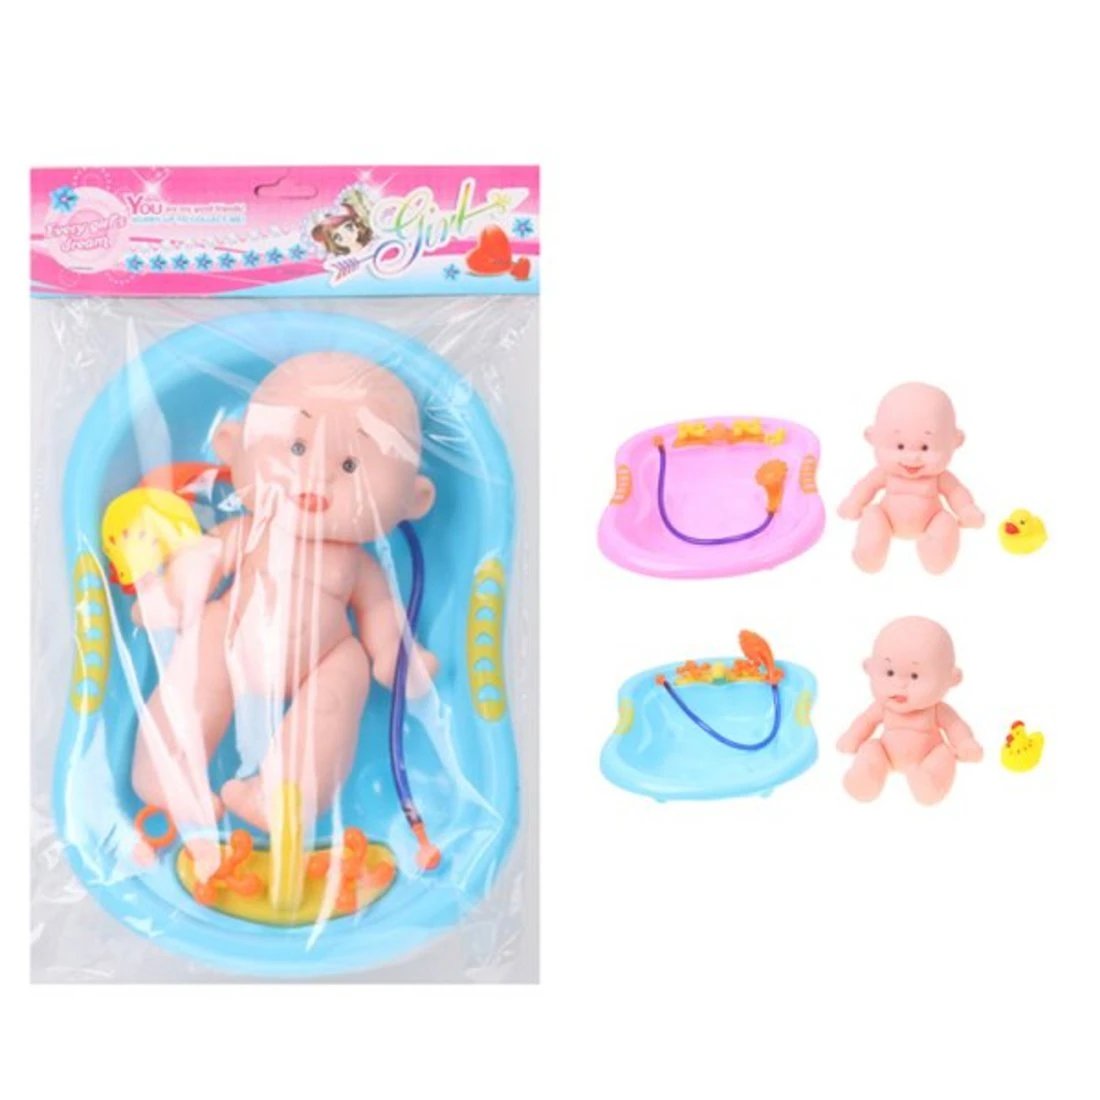 Игровой набор "Мой малыш", в комплекте: кукла-пупс 25см, предметов 2